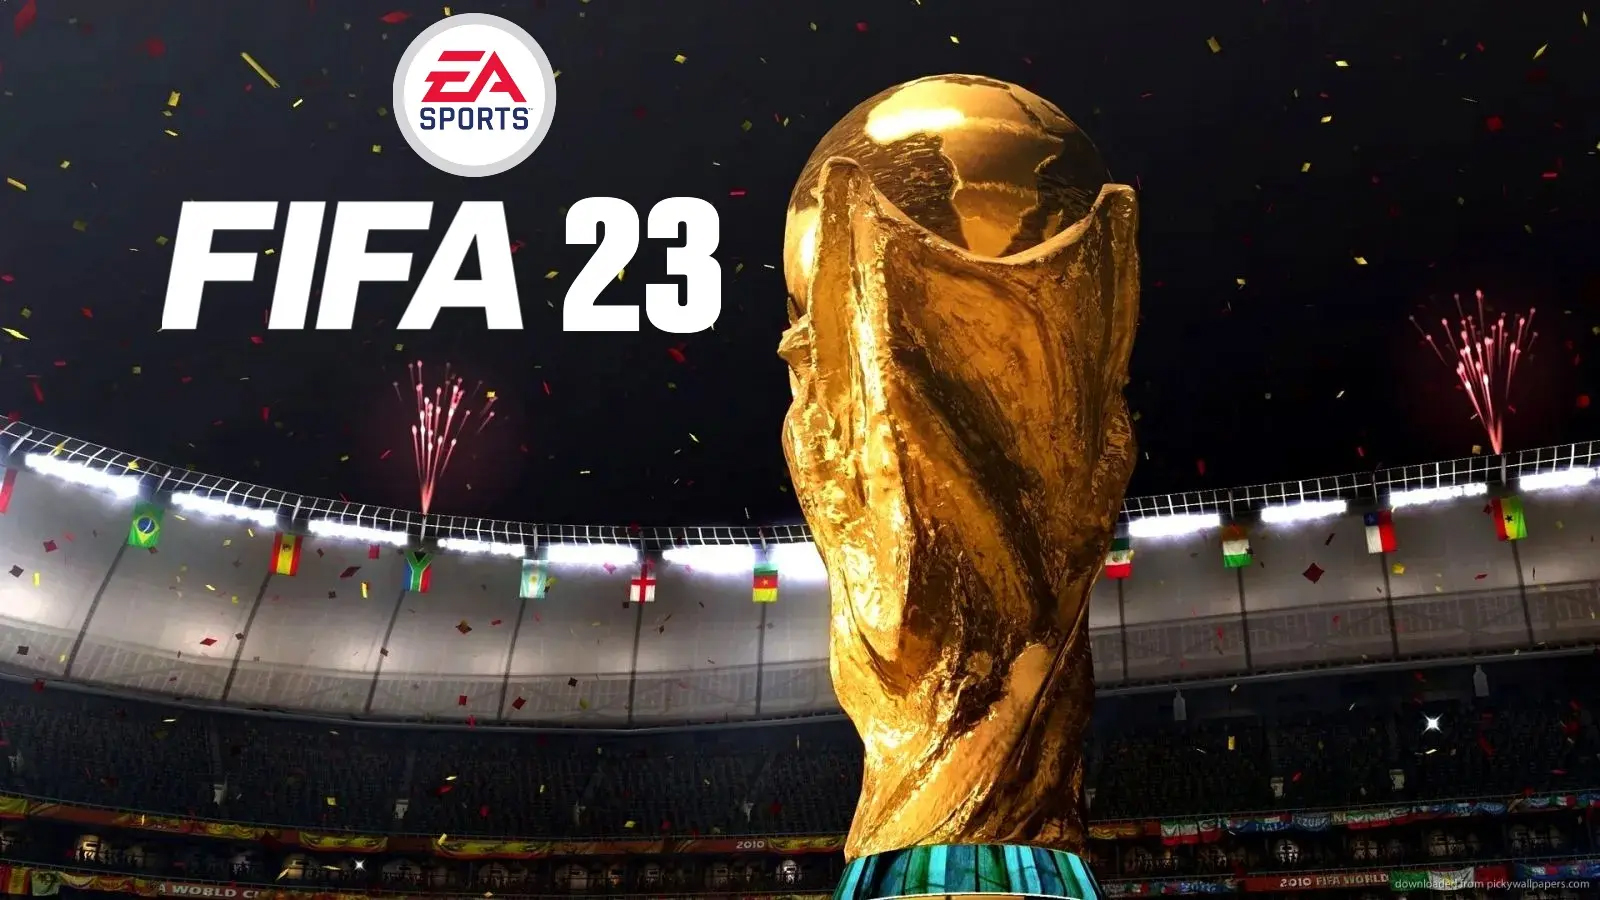 بازی فیفا 23؛ مروری بر آخرین برچسب فیفا با استفاده از تکنولوژی هایپر موشن 2 